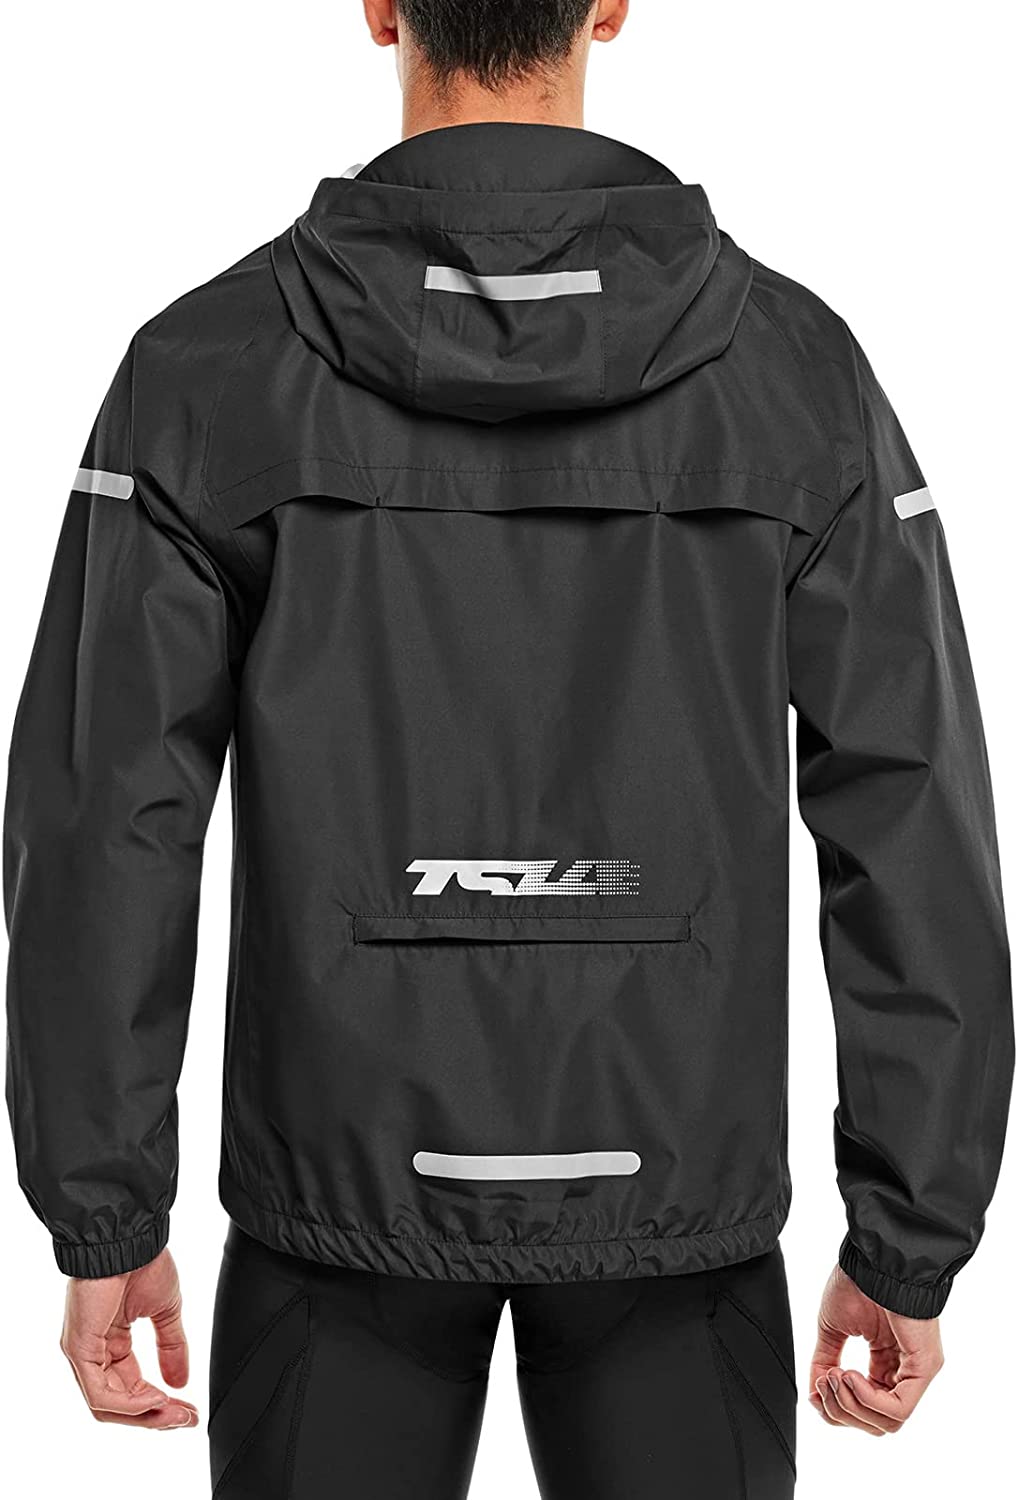 Waterproof Running Workout Rain Jackets Packable Reflective Hiking Hoodie TSLA Women's Cycling Windbreaker Jacket 